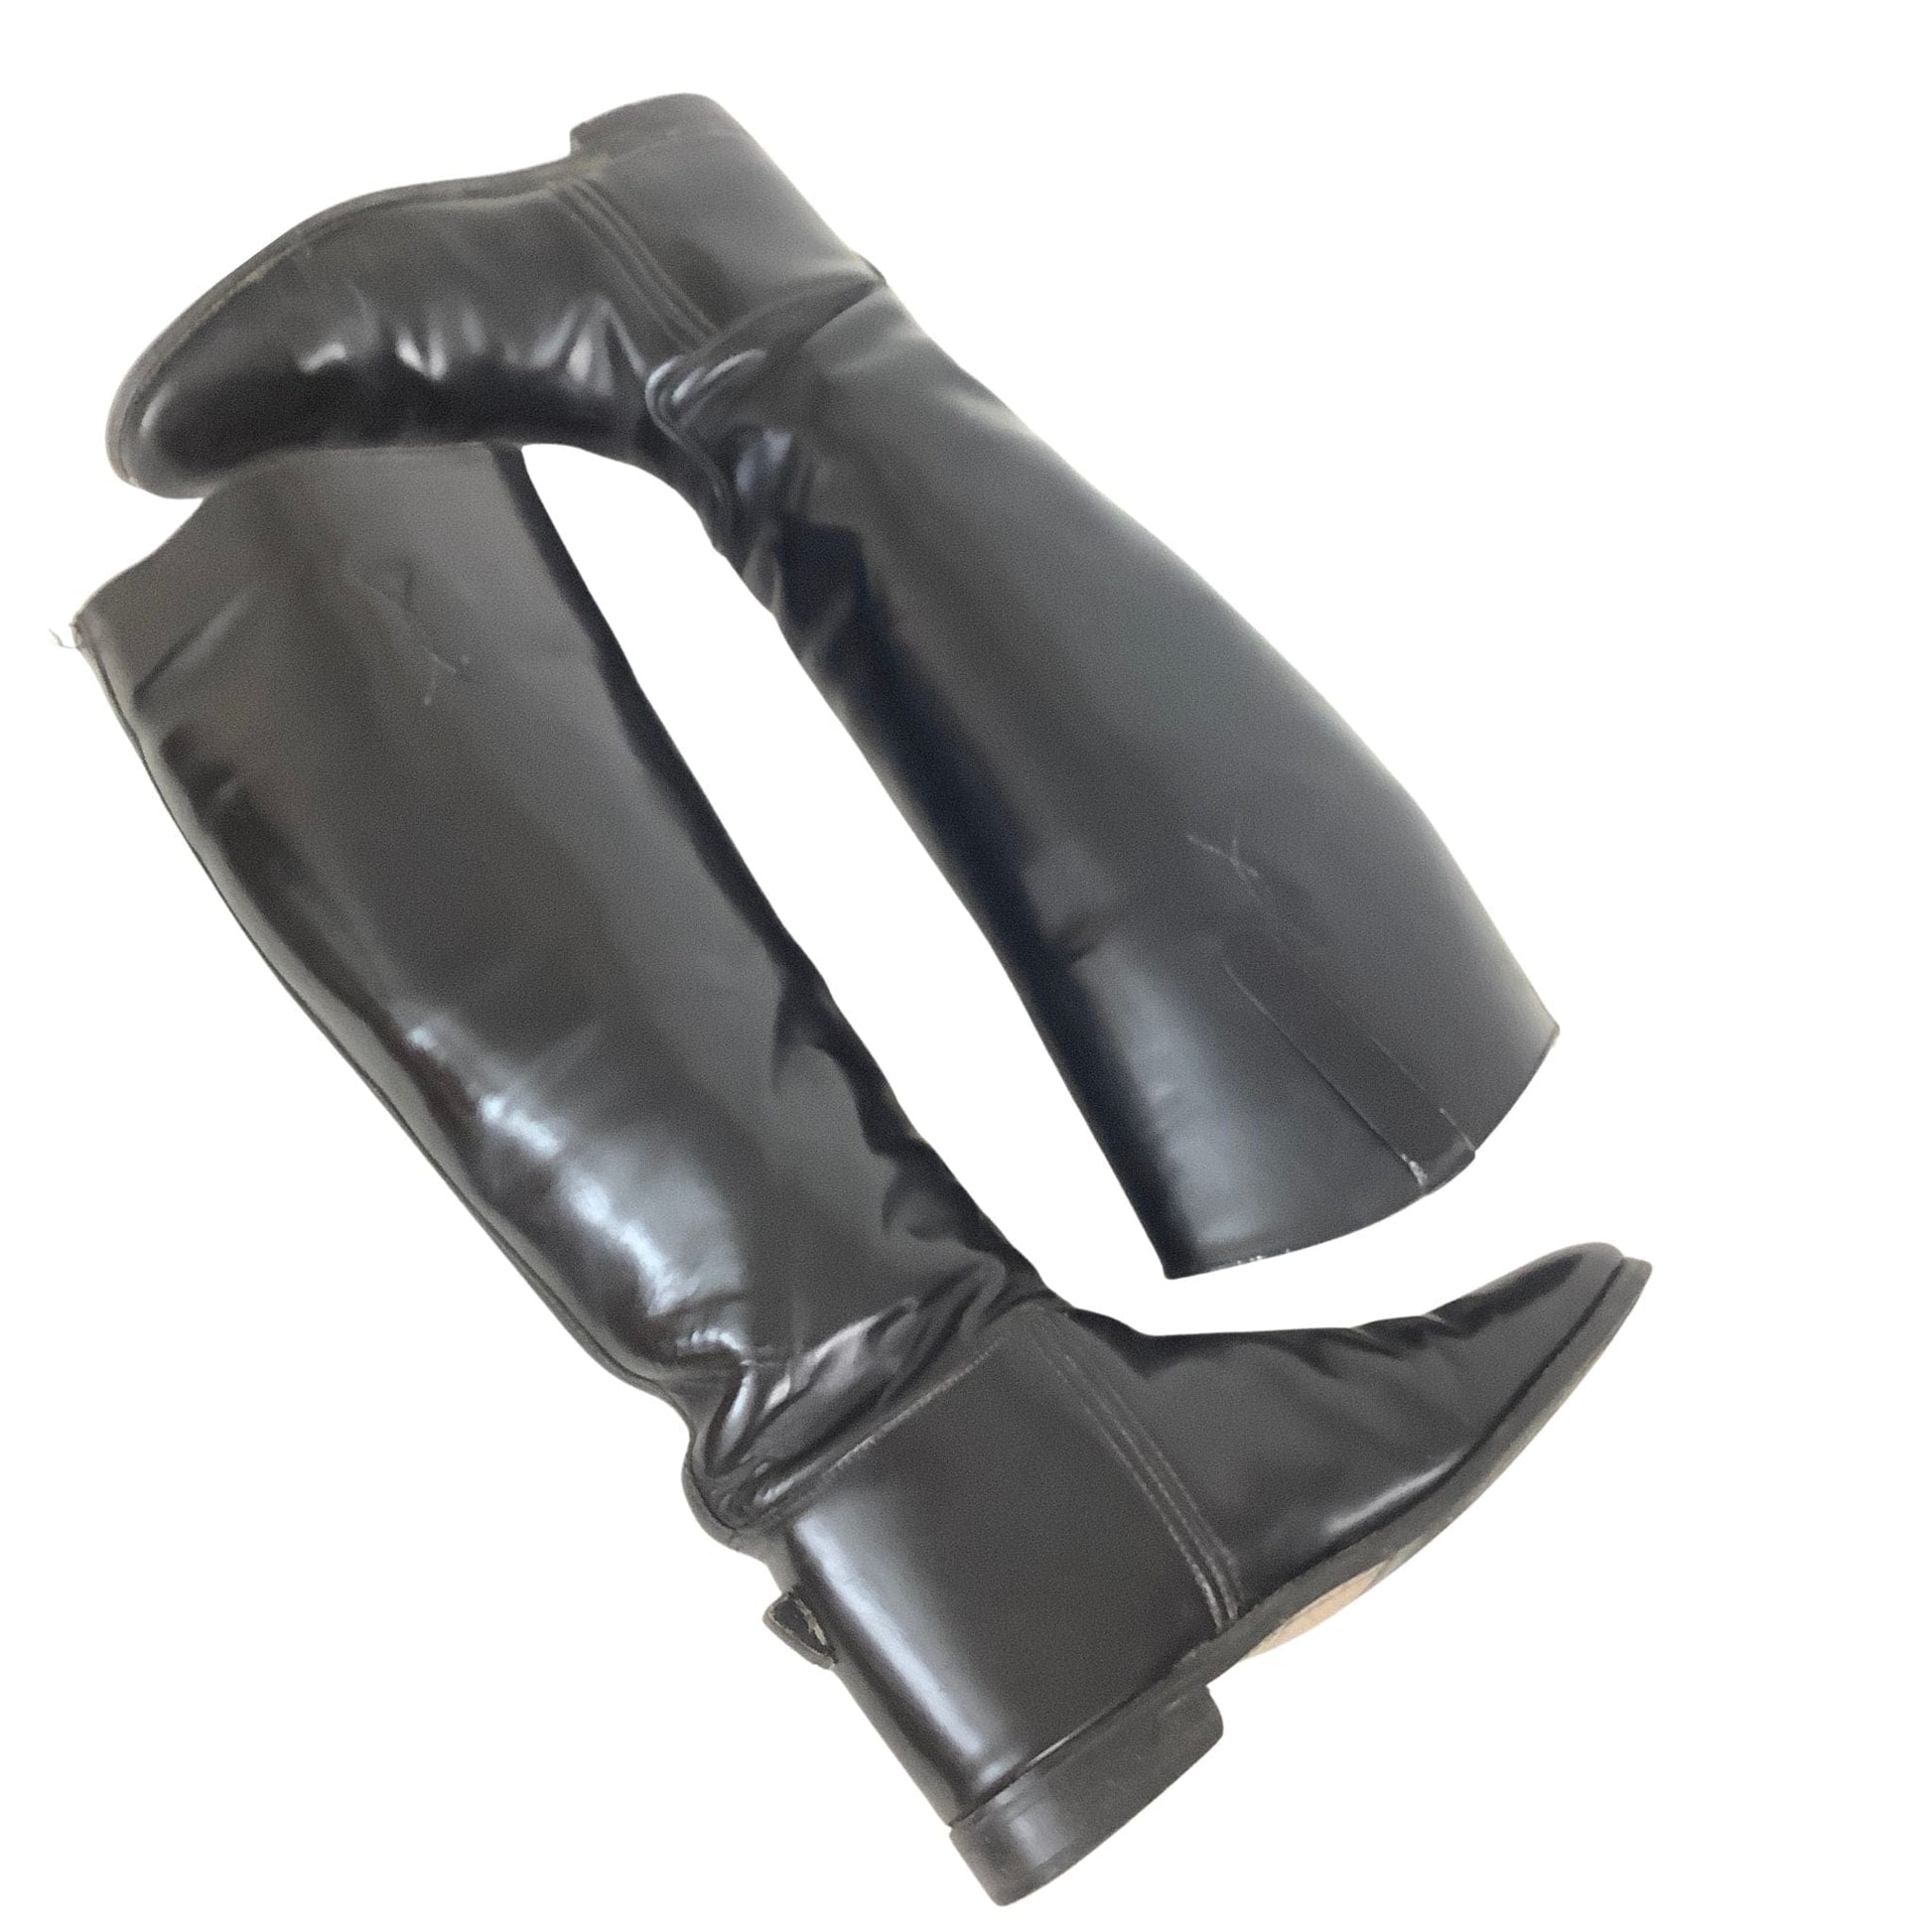 Used Dressage Boots 8 / Black / Vintage 1990s